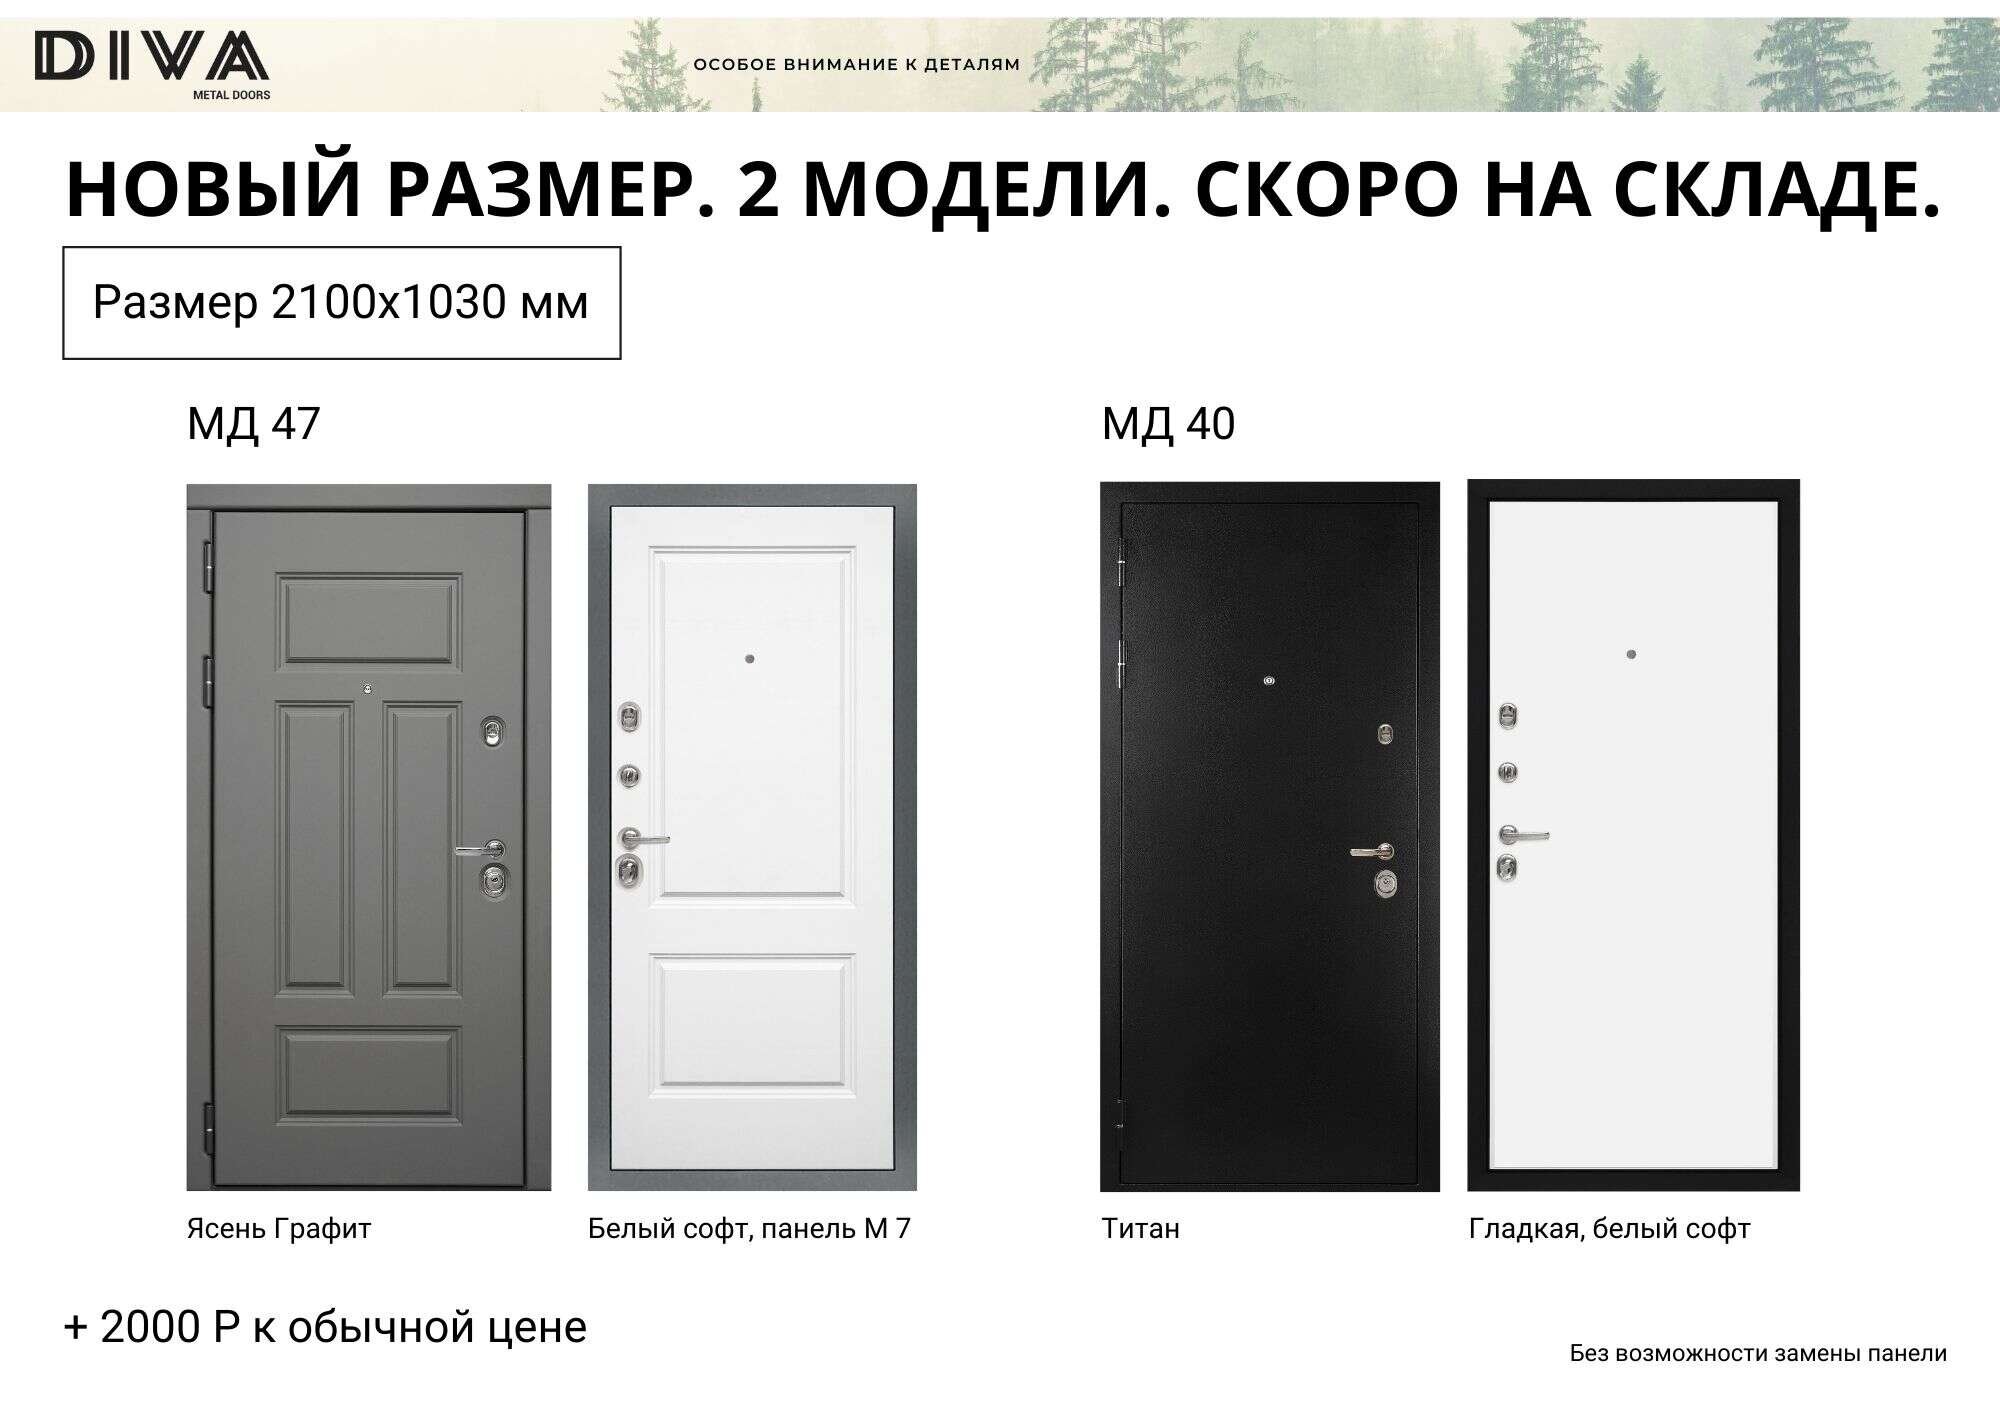 Металлические двери Дива размер 1030x2100 для нестандартных проёмов